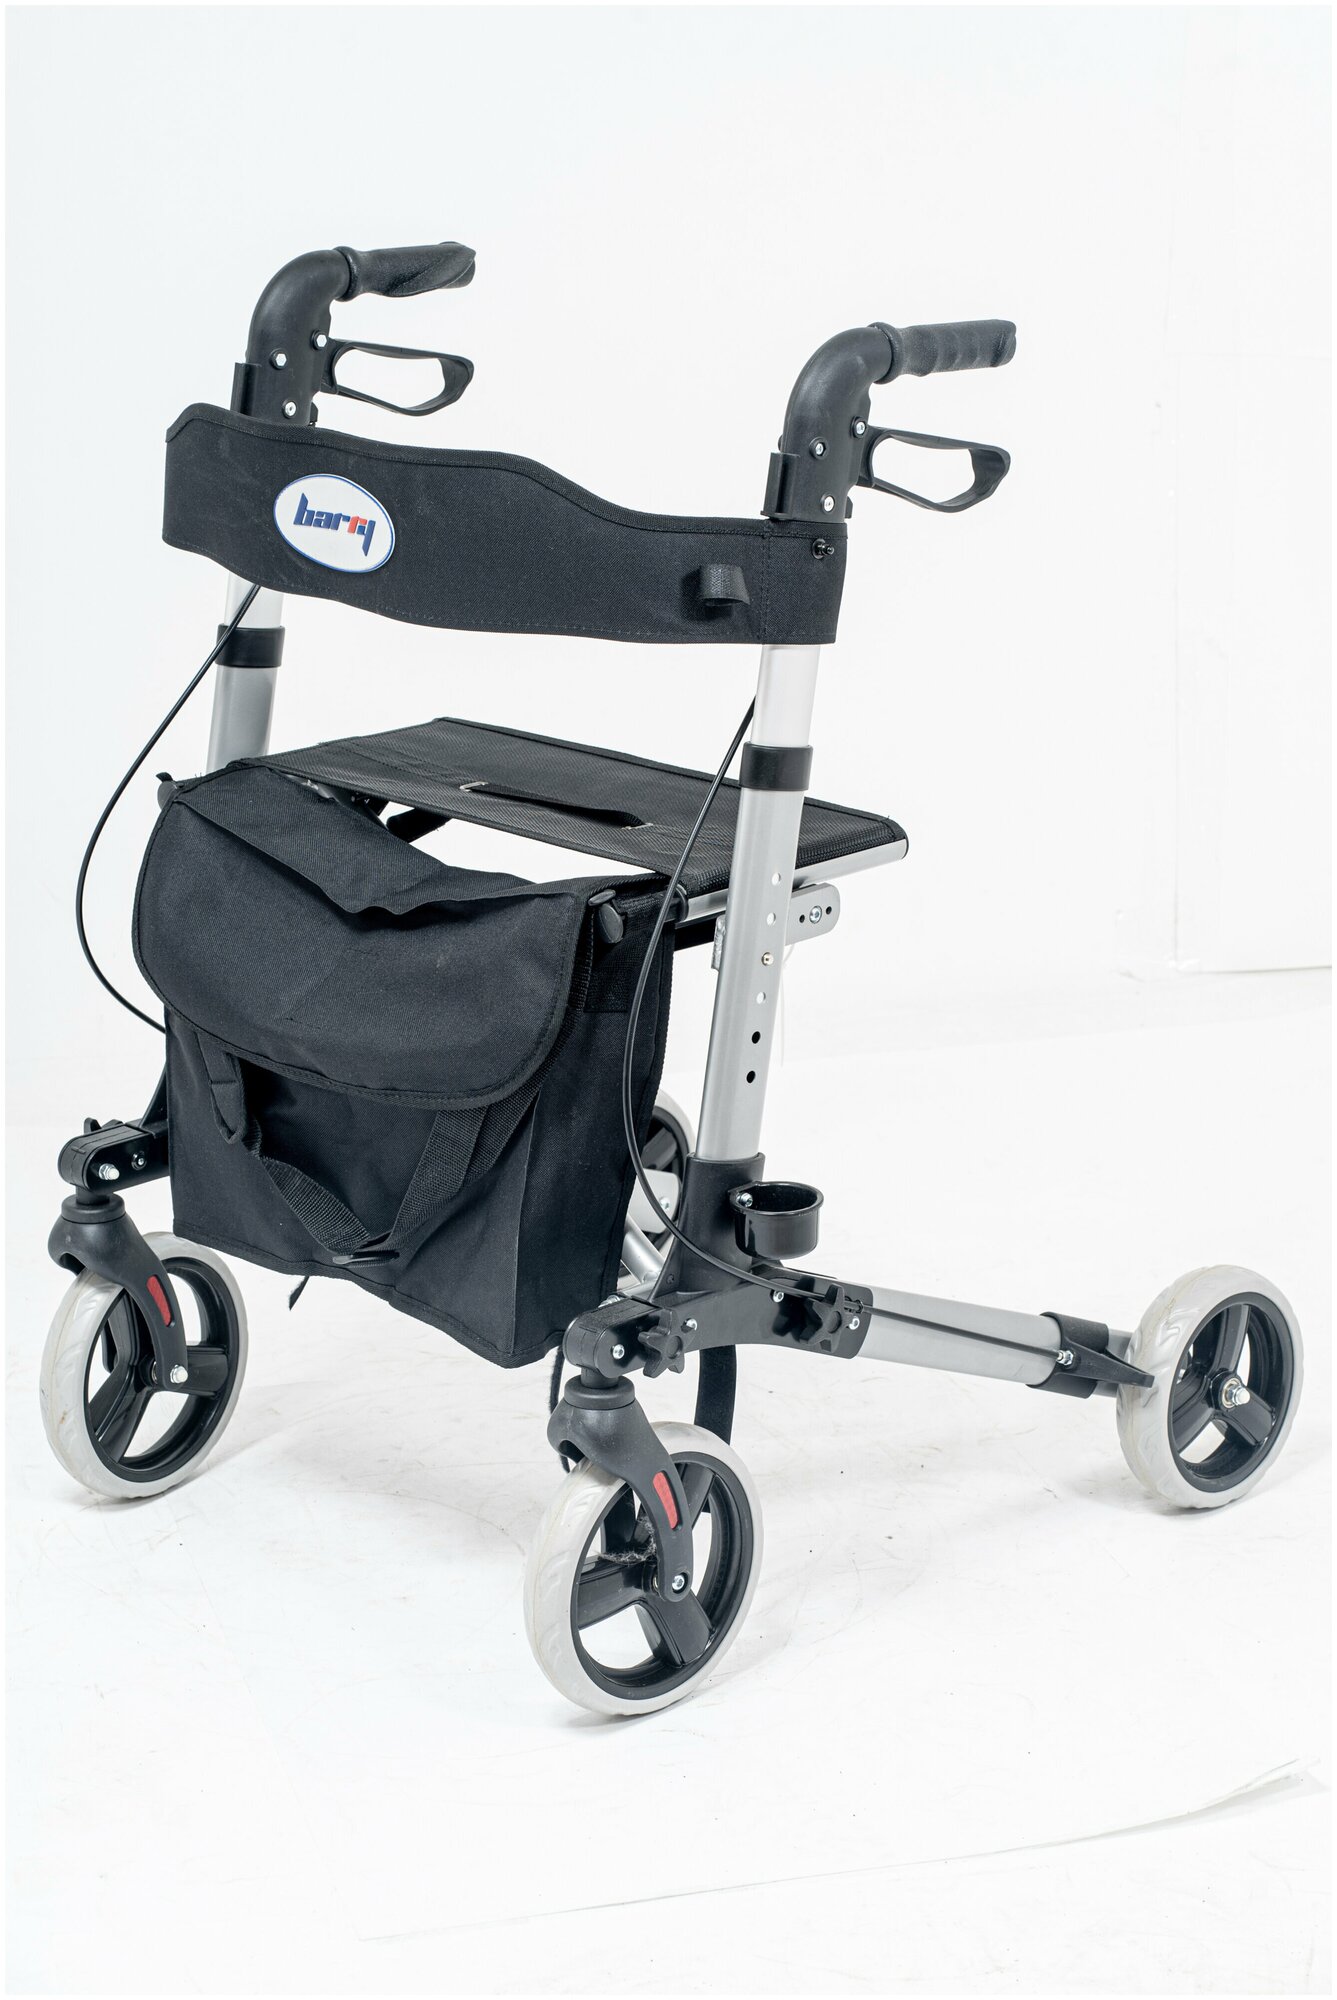 Ходунки на колесах с сумкой для взрослых, пожилых, инвалидов. Роллаторы с сиденьем и опорой под спину